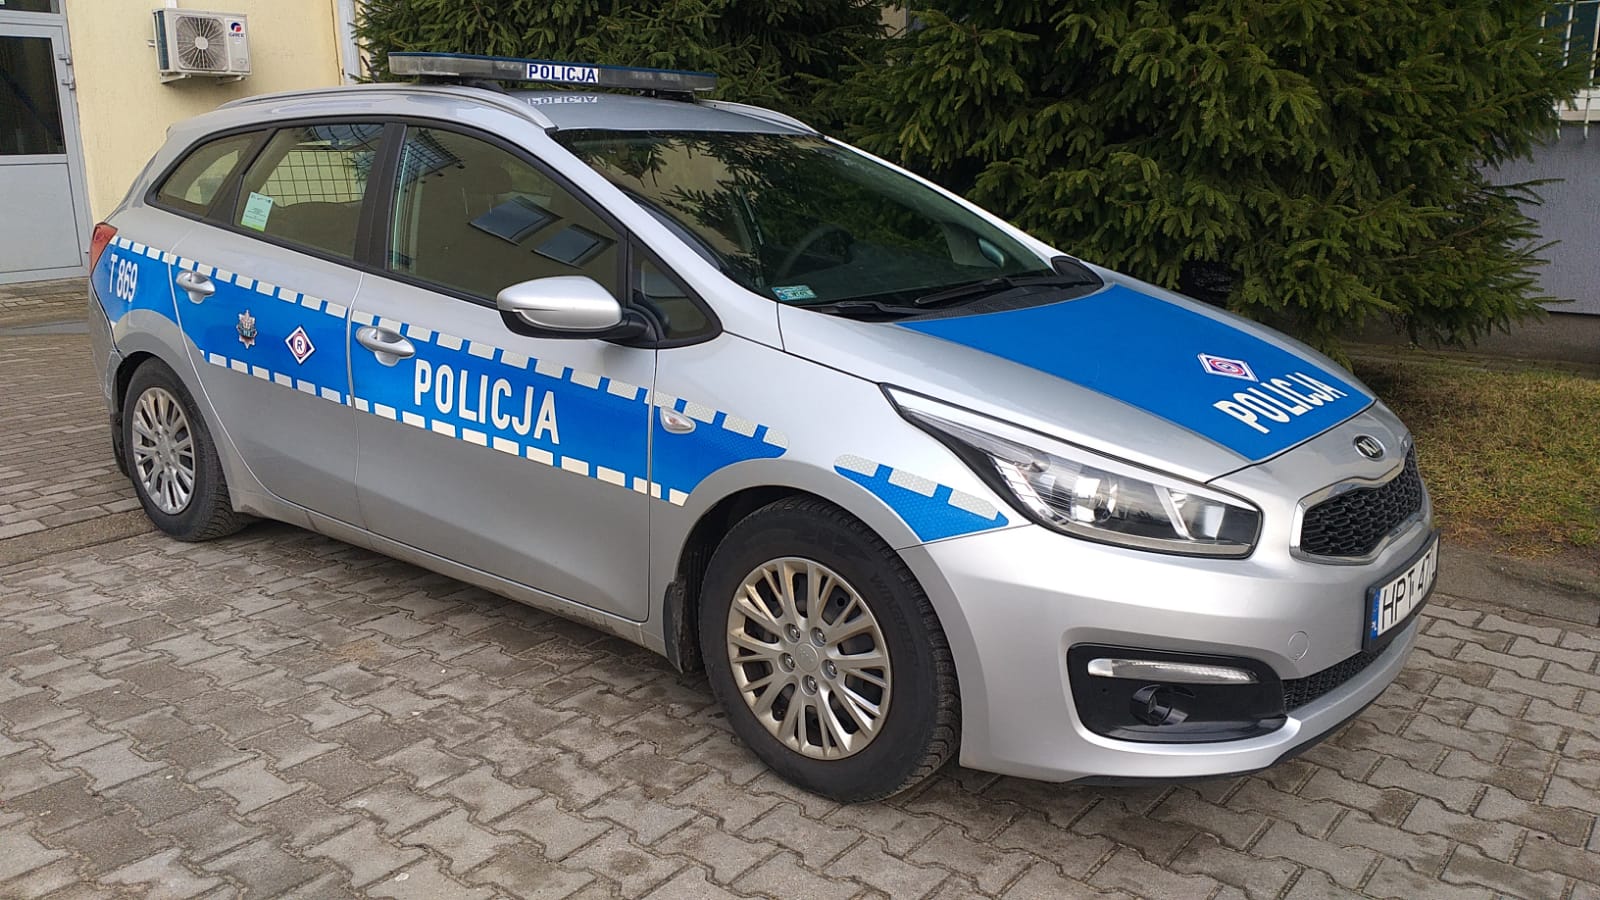 Pijany kierowca uderzył w radiowóz pijany kierowca Ostróda, Wiadomości, zPAP